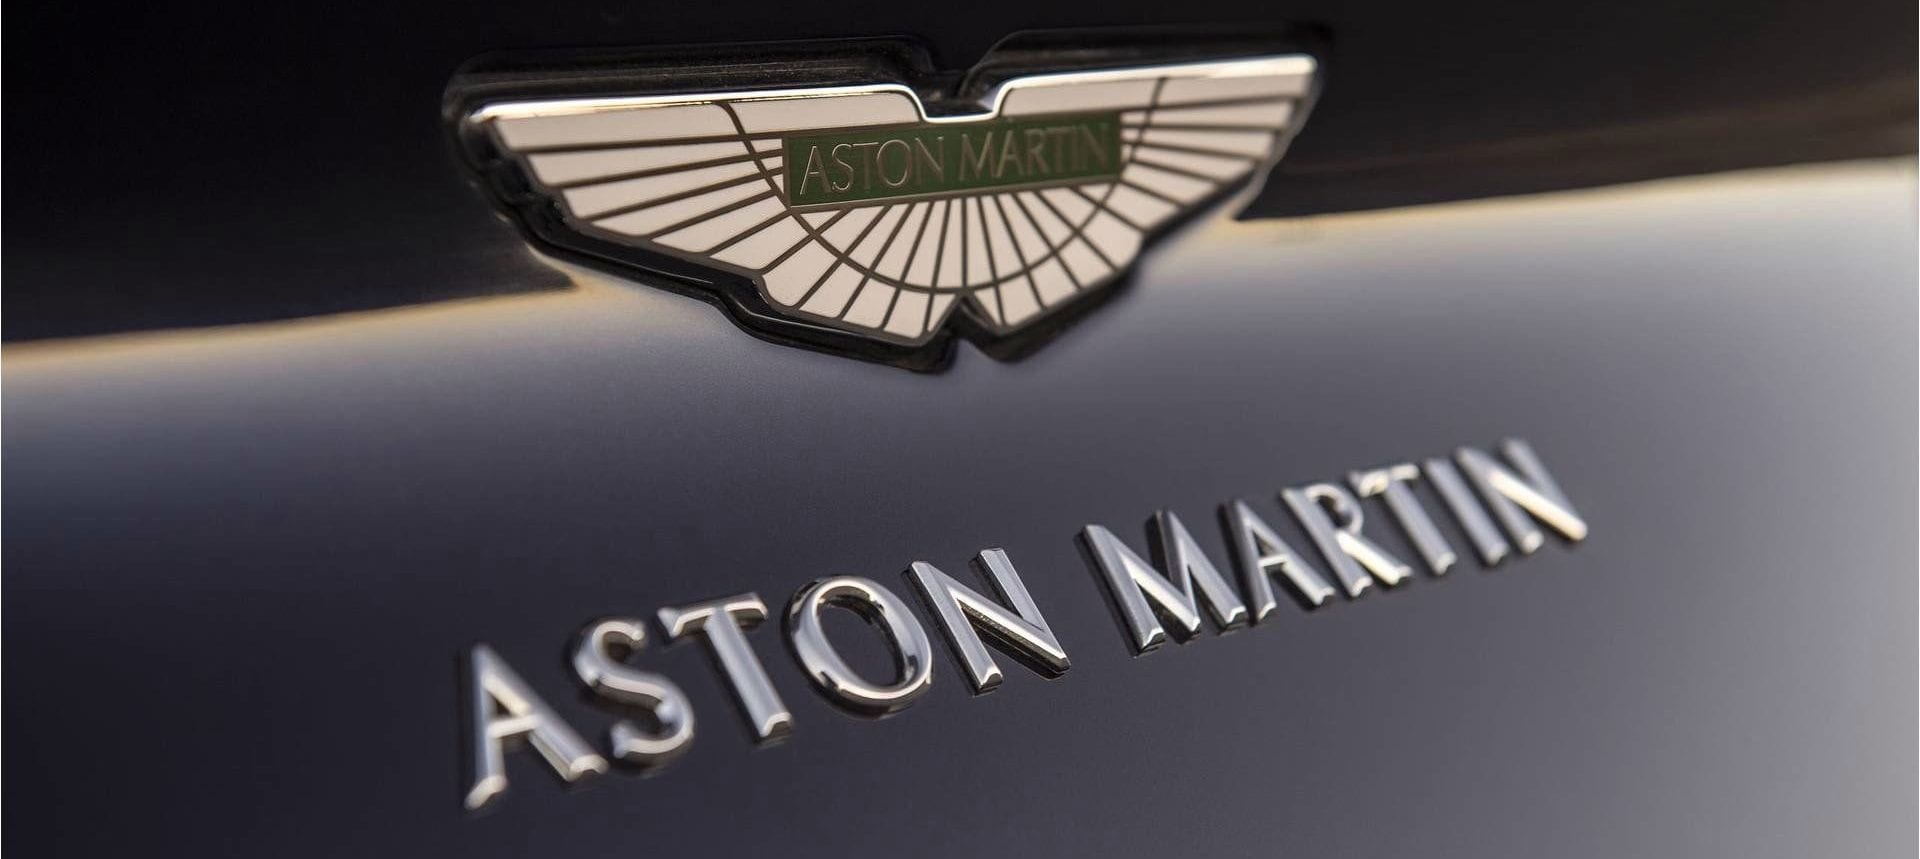 أستون مارتن تُصنّع سياراتها الكهربائية في انجلترا بدءً من عام 2025